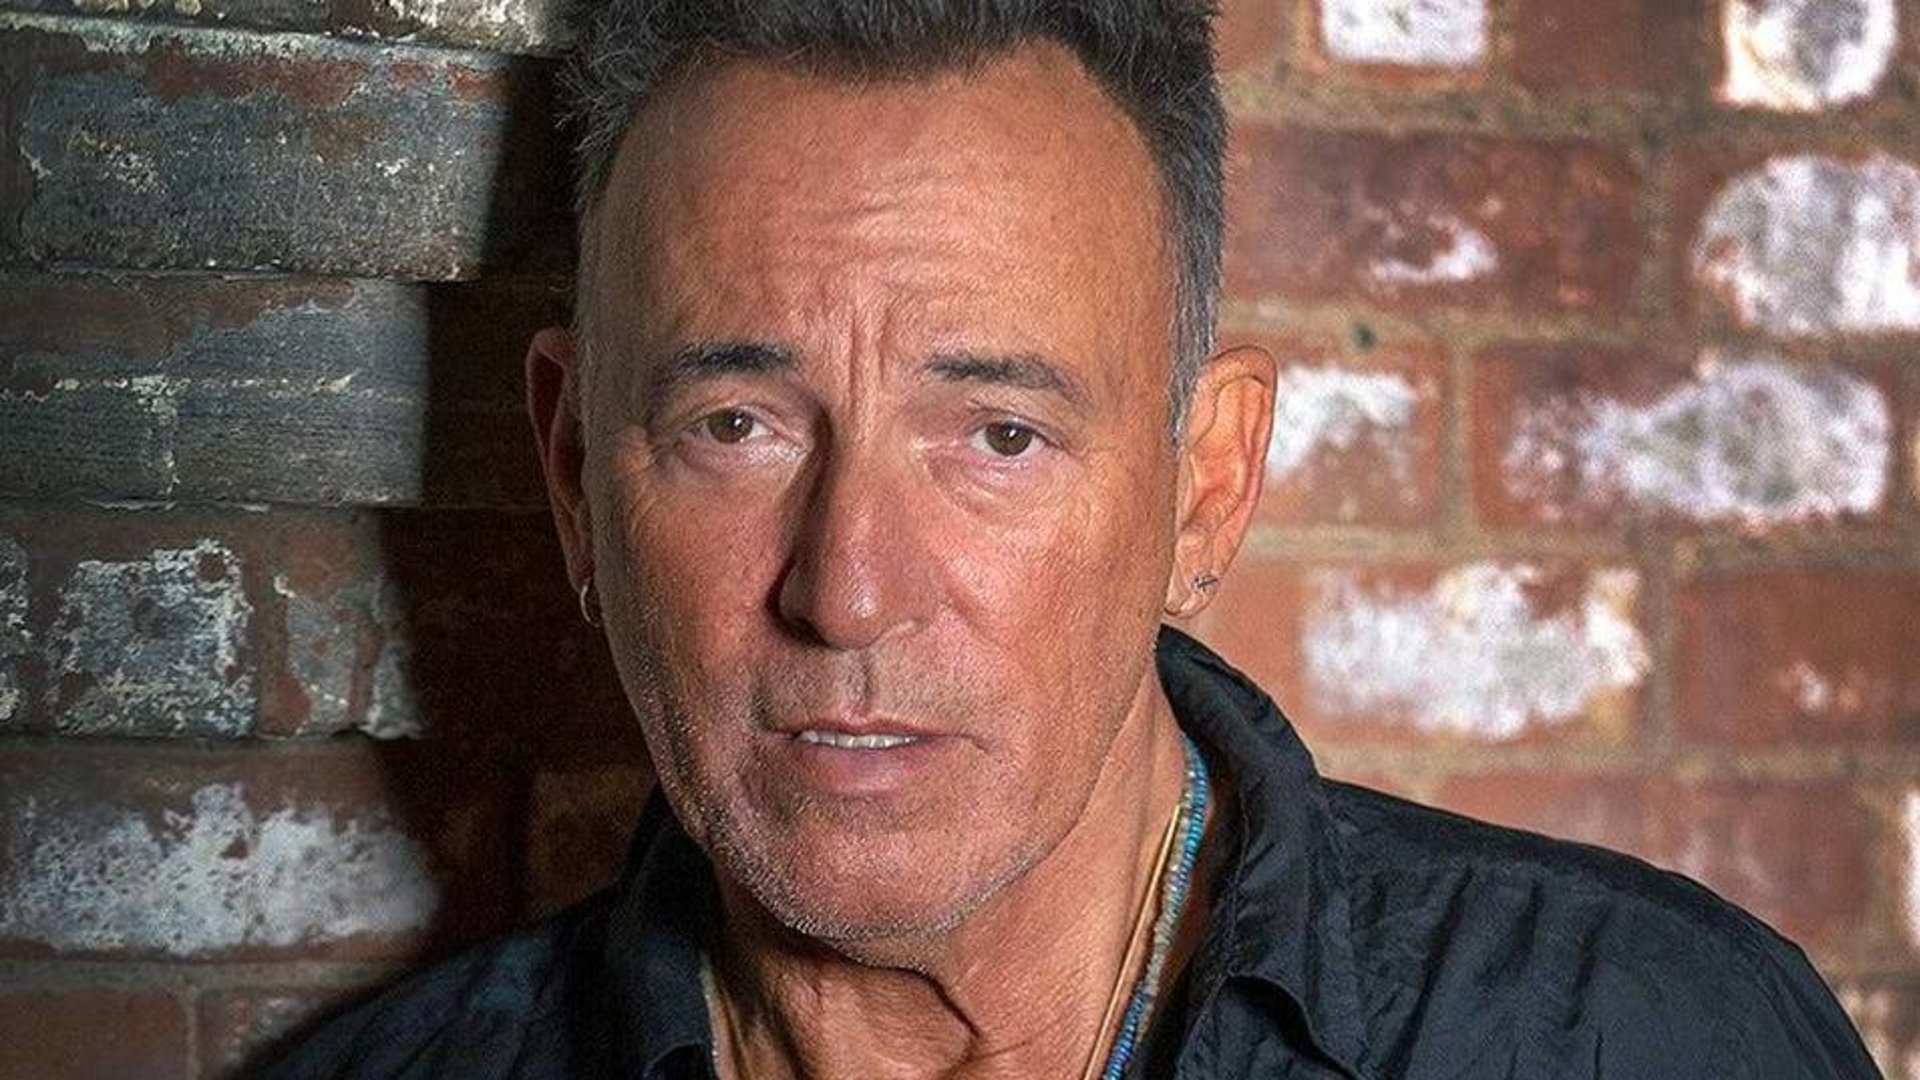 Ungewöhnliches Springsteen-Biopic kommt: Darum kann eigentlich nichts schief gehen (Meinung)